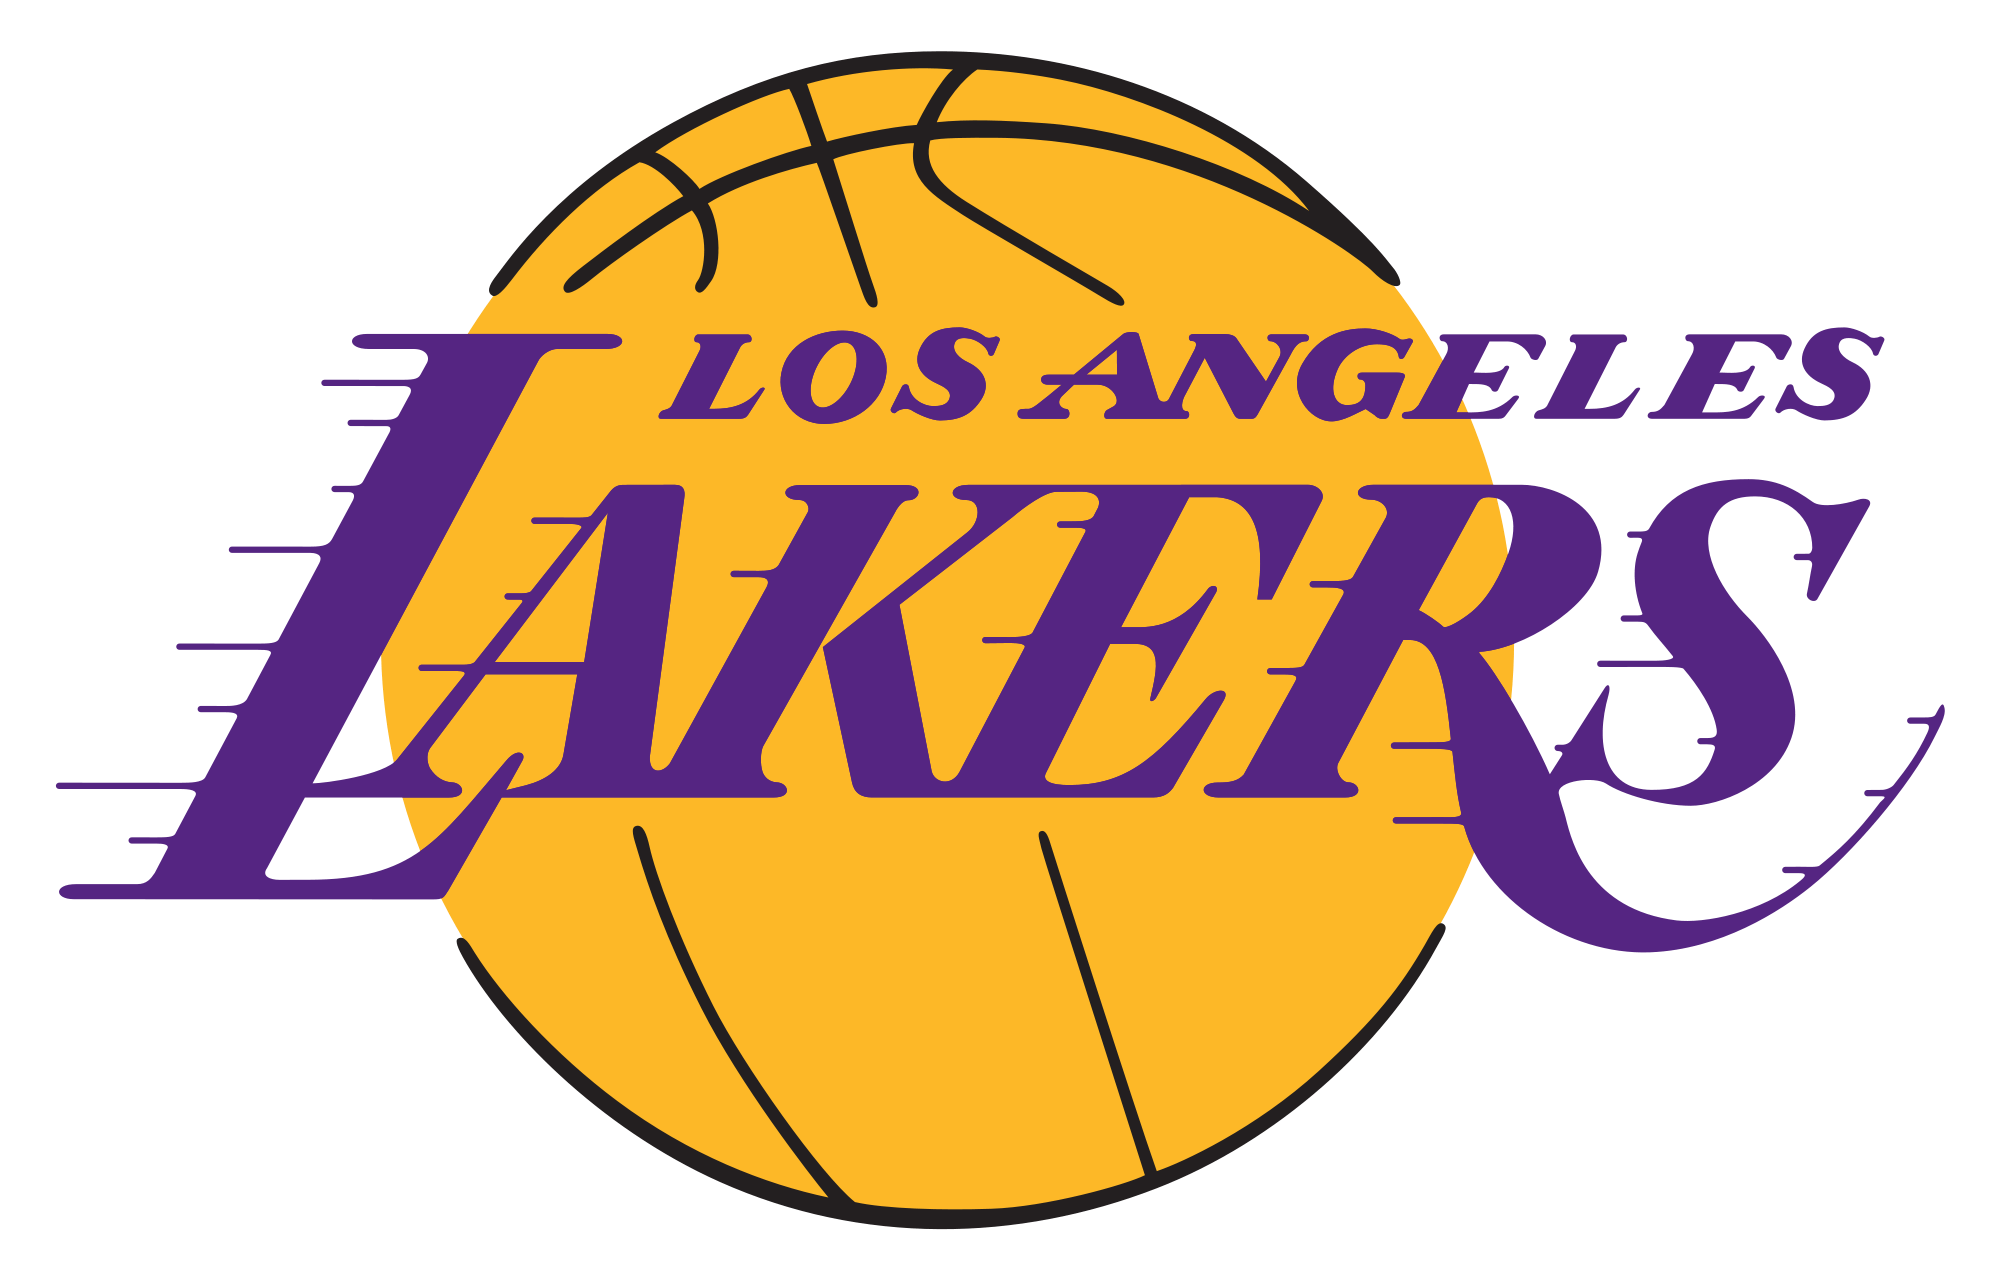 Los Angeles Lakers Png - Los 